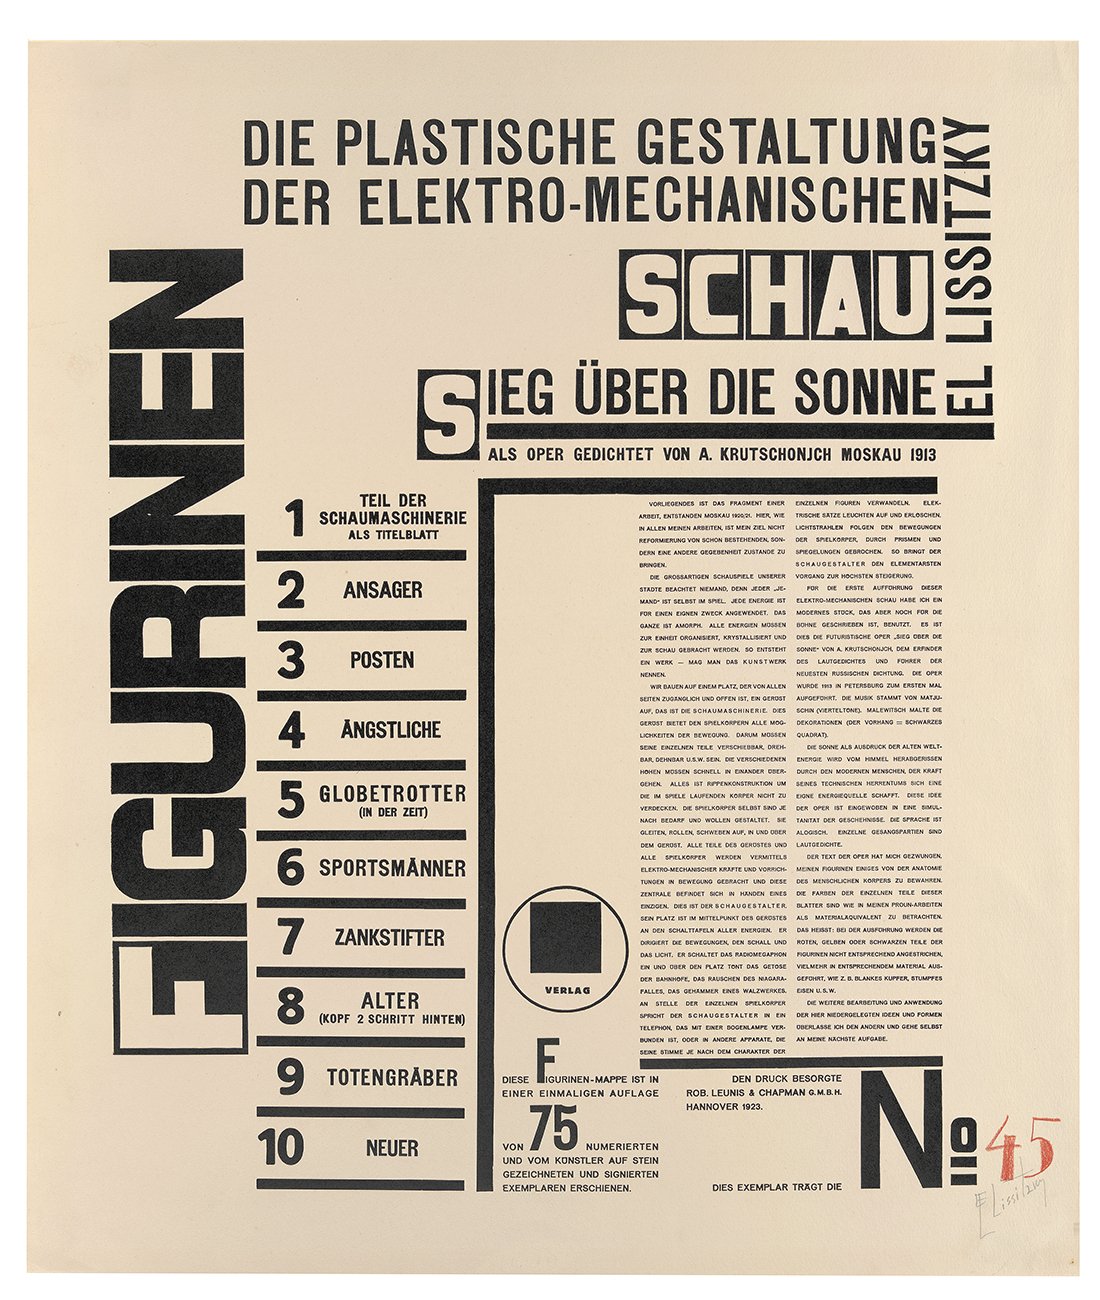 Die plastische Gestaltung der elektro-mechanischen Schau. Sieg über die Sonne: Textblatt (Kunsthalle Bielefeld Public Domain Mark)